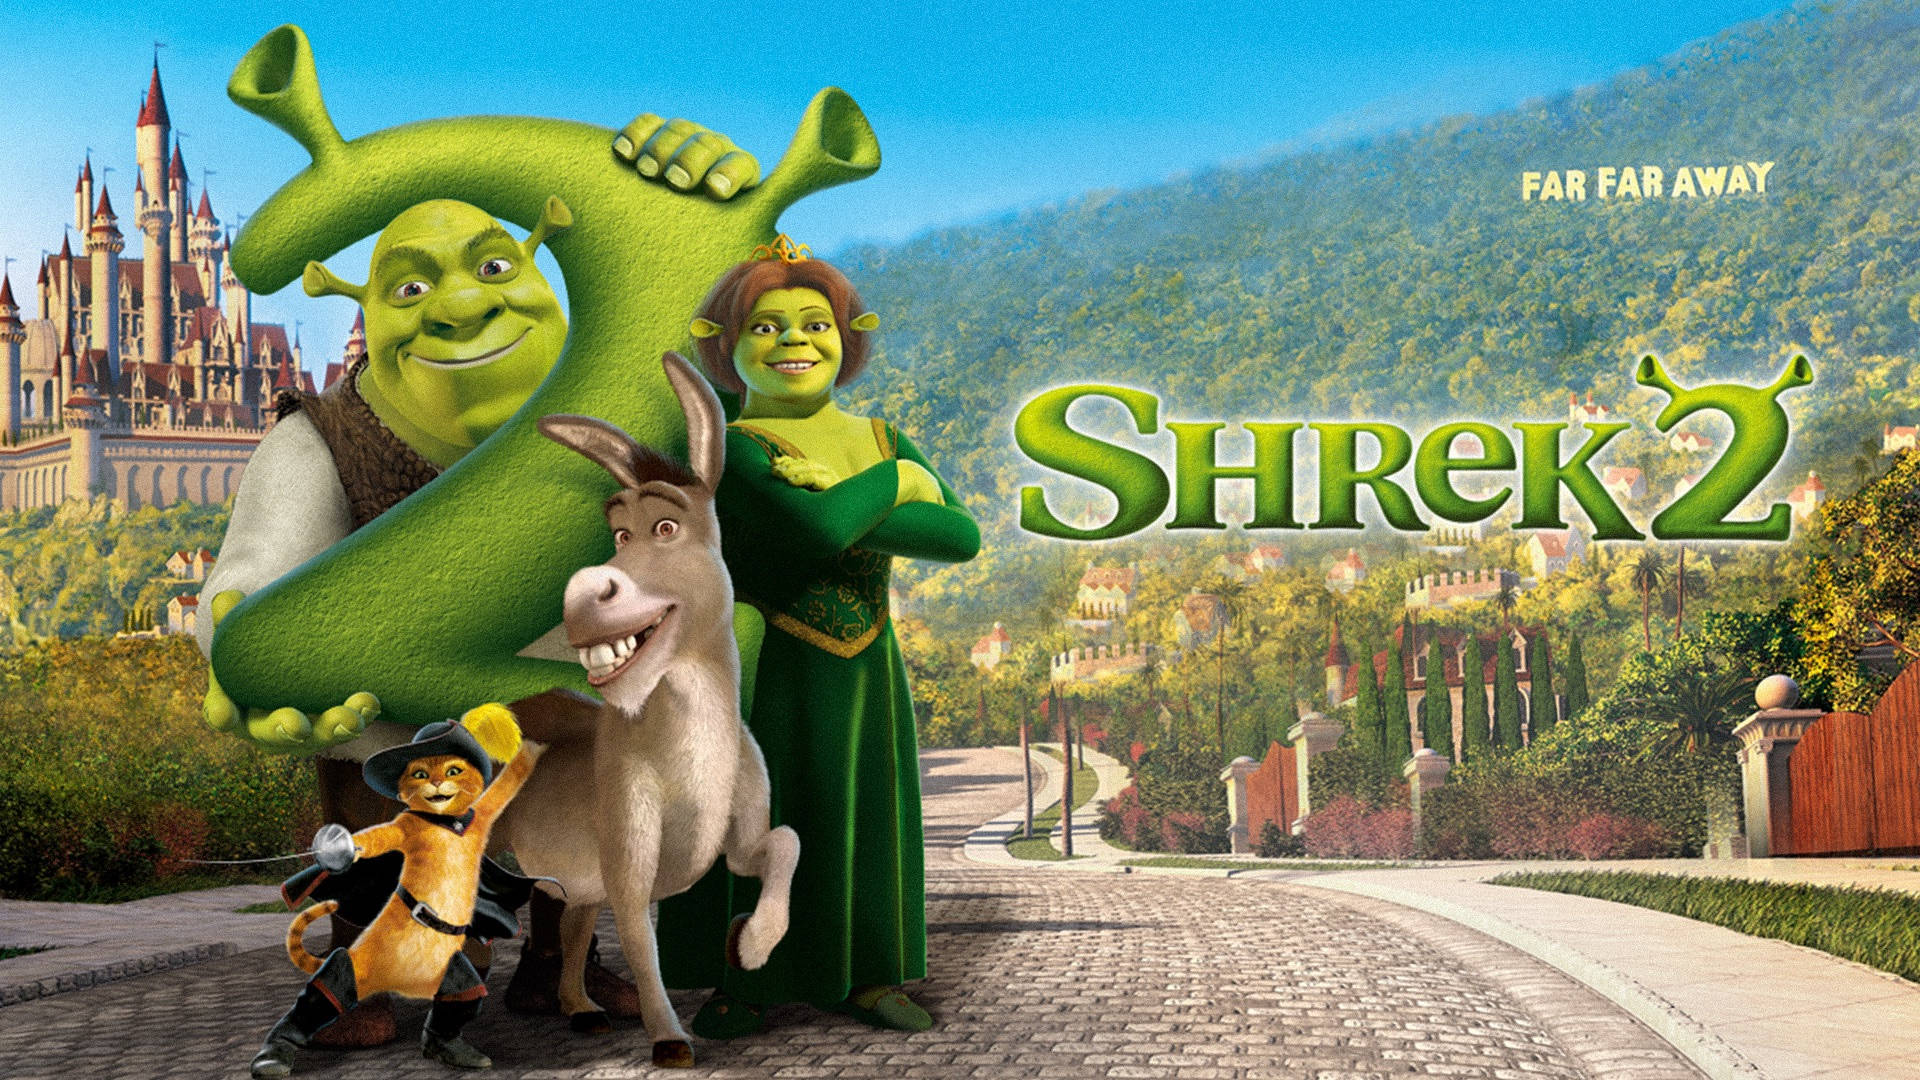 Shrek 2 Plakat Landskab - Drømme om en eventyrlig verden. Wallpaper